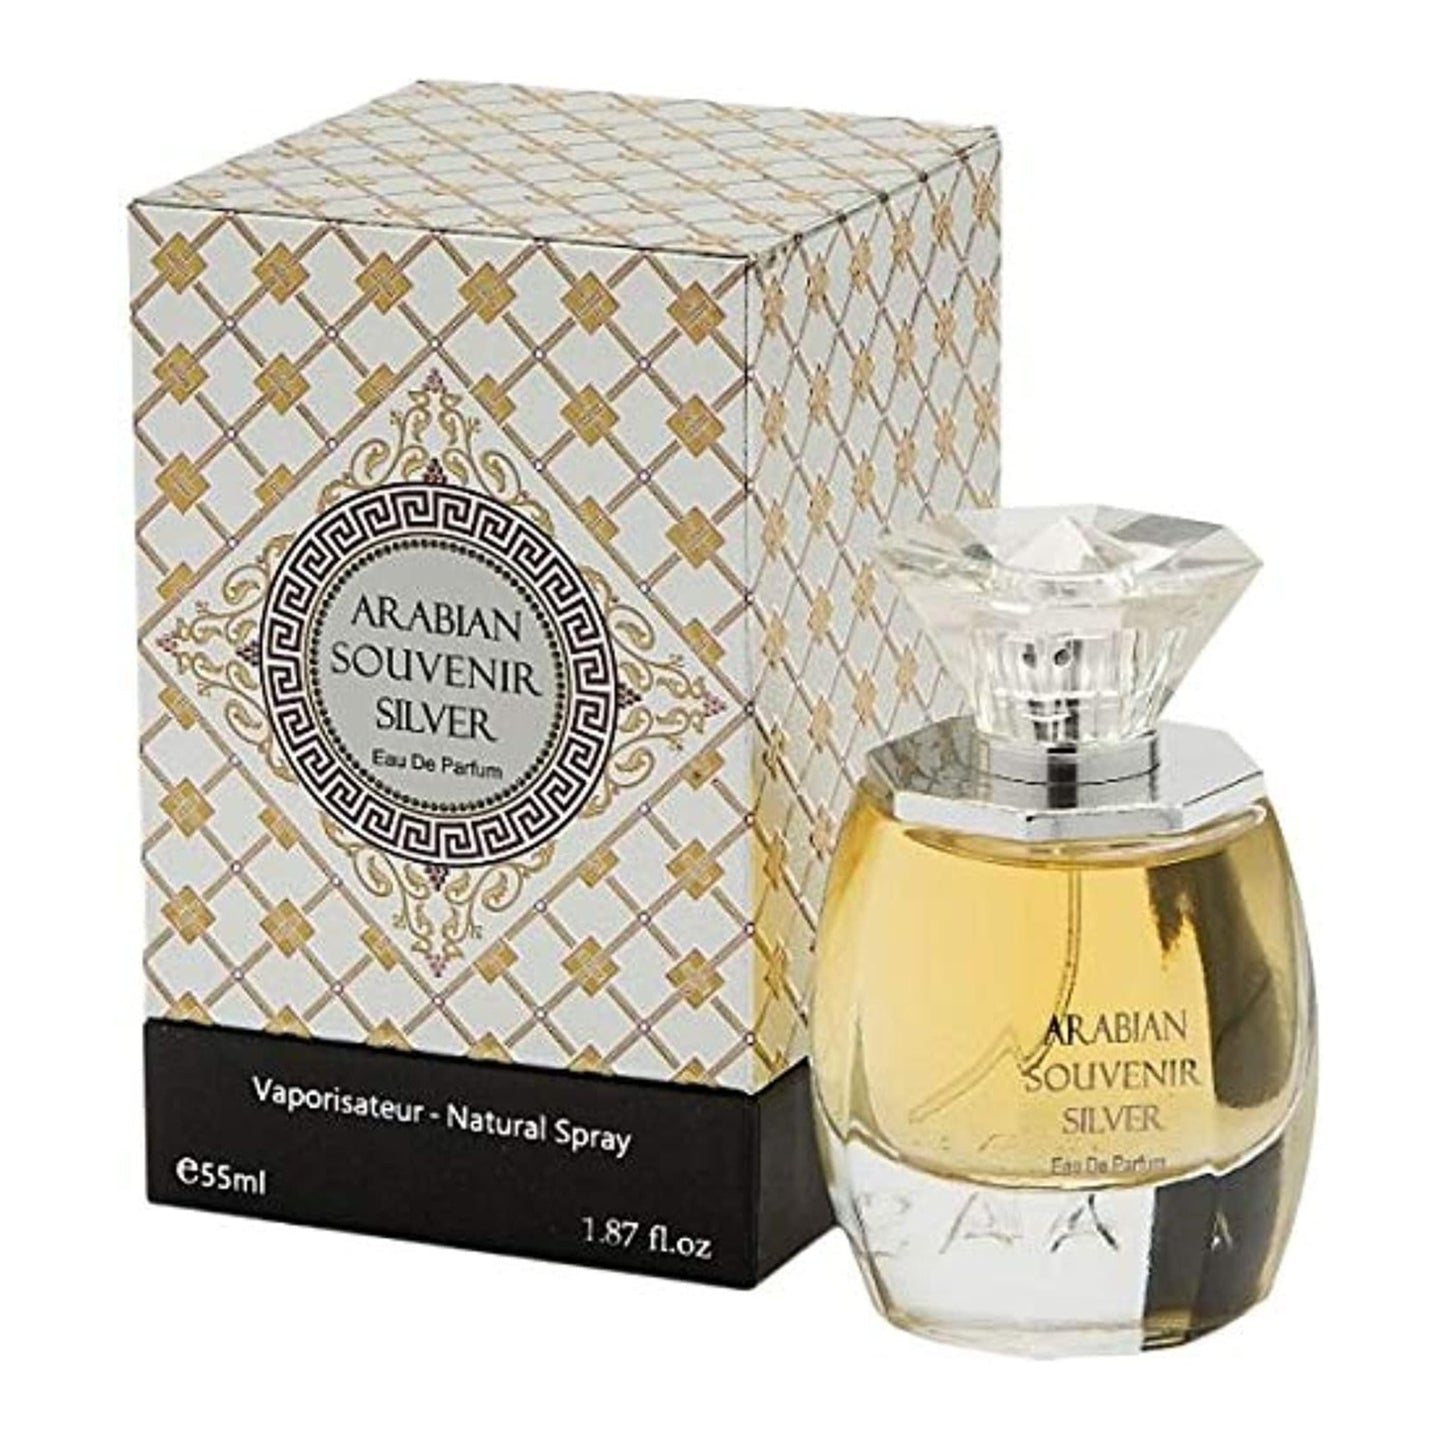 Arabian Souvenir-Arabian Souvenir Silver Unisex - Eau de Parfum - 55ml - Brandat Outlet